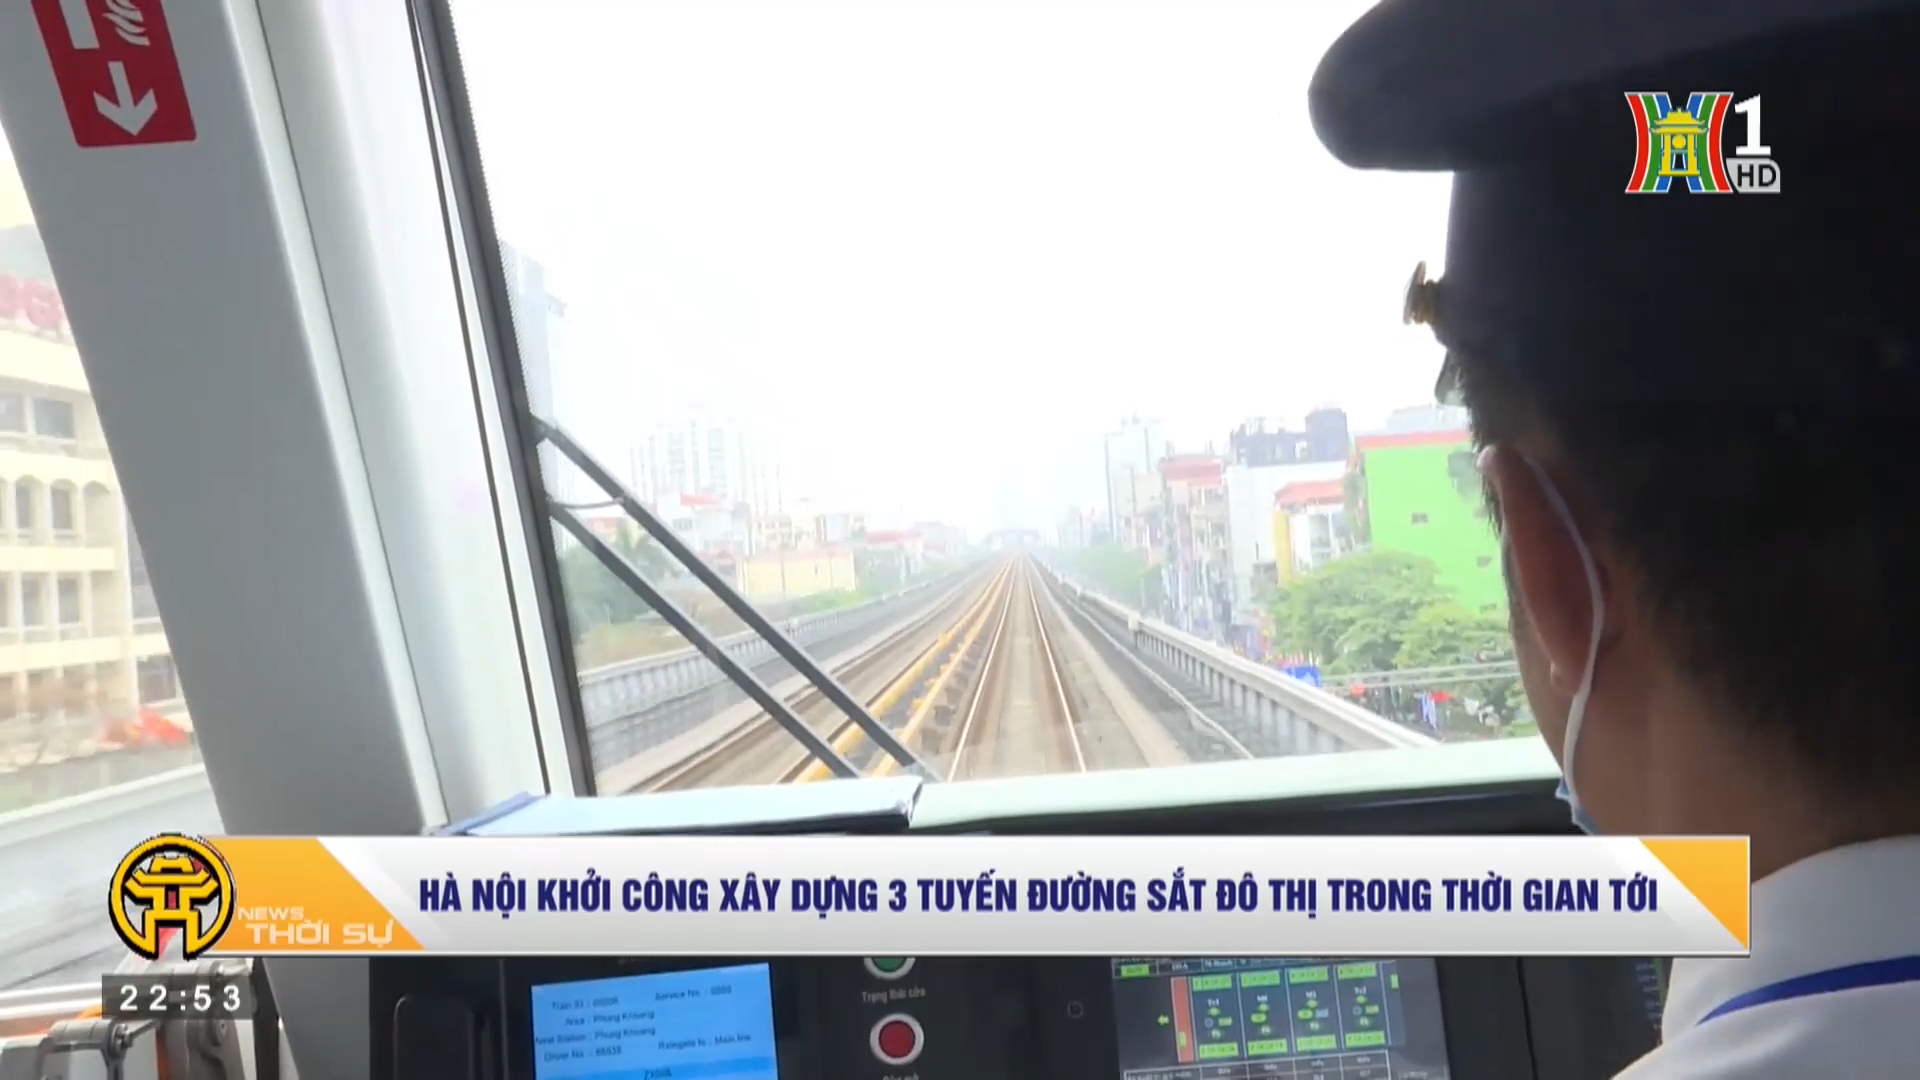 Hà Nội khởi công xây dựng 3 tuyến đường sắt đô thi trong thời gian tới